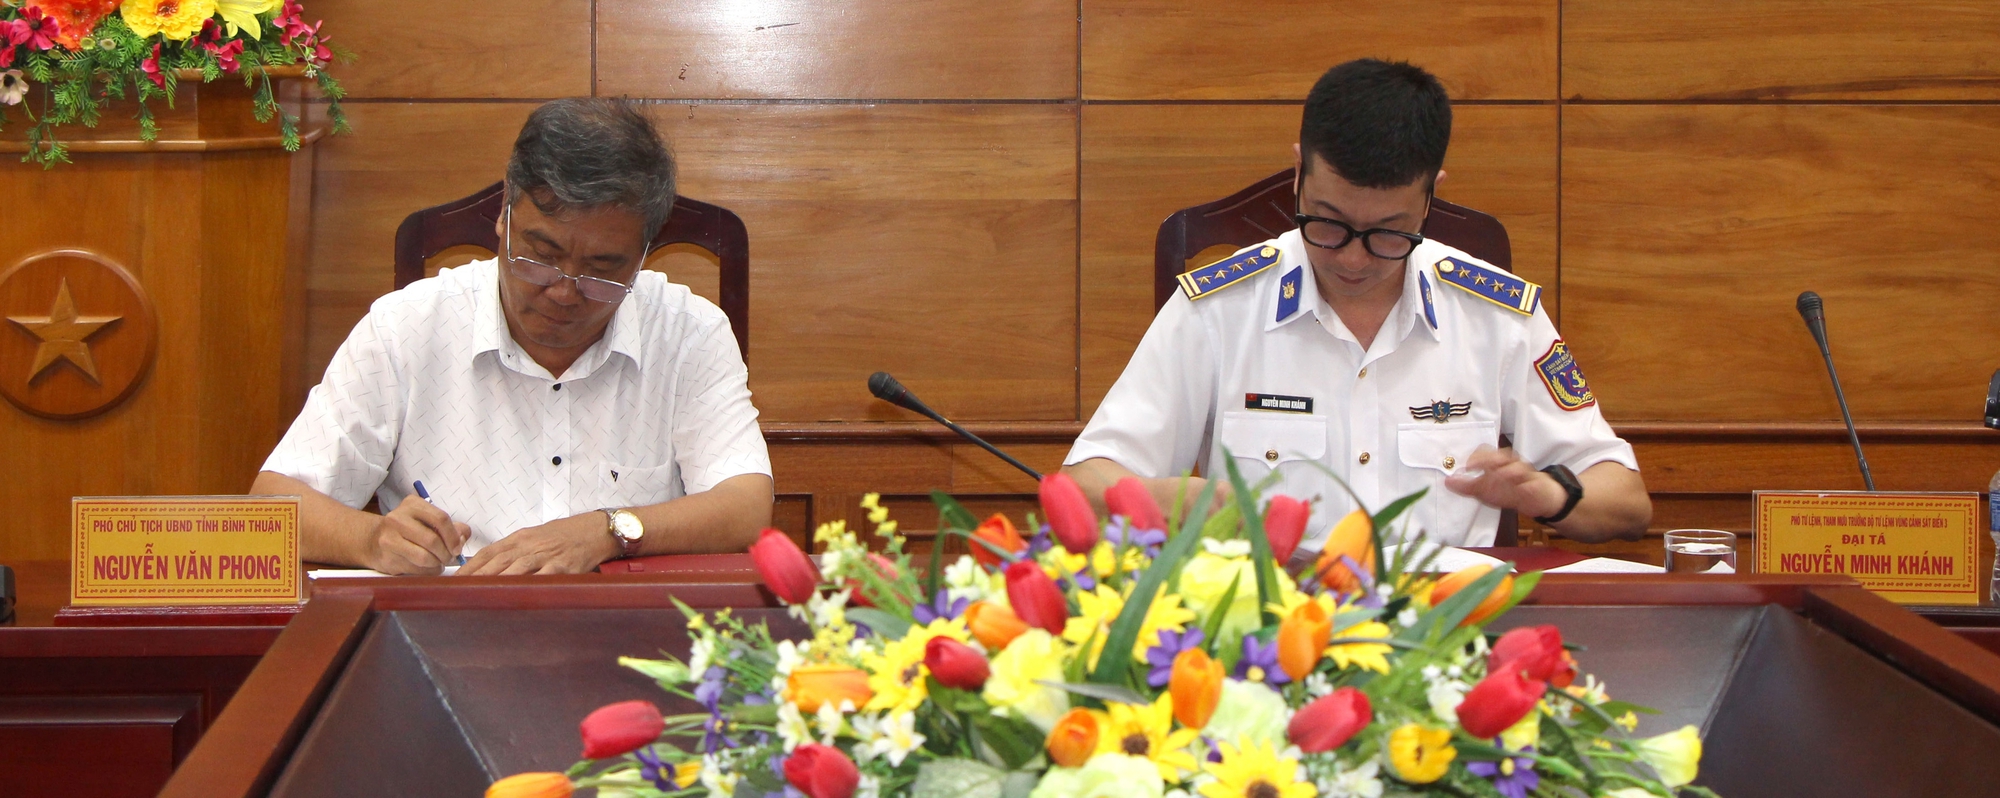 Bình Thuận: Kiên quyết chấm dứt tình trạng tàu cá và ngư dân vi phạm vùng biển nước ngoài  - Ảnh 3.